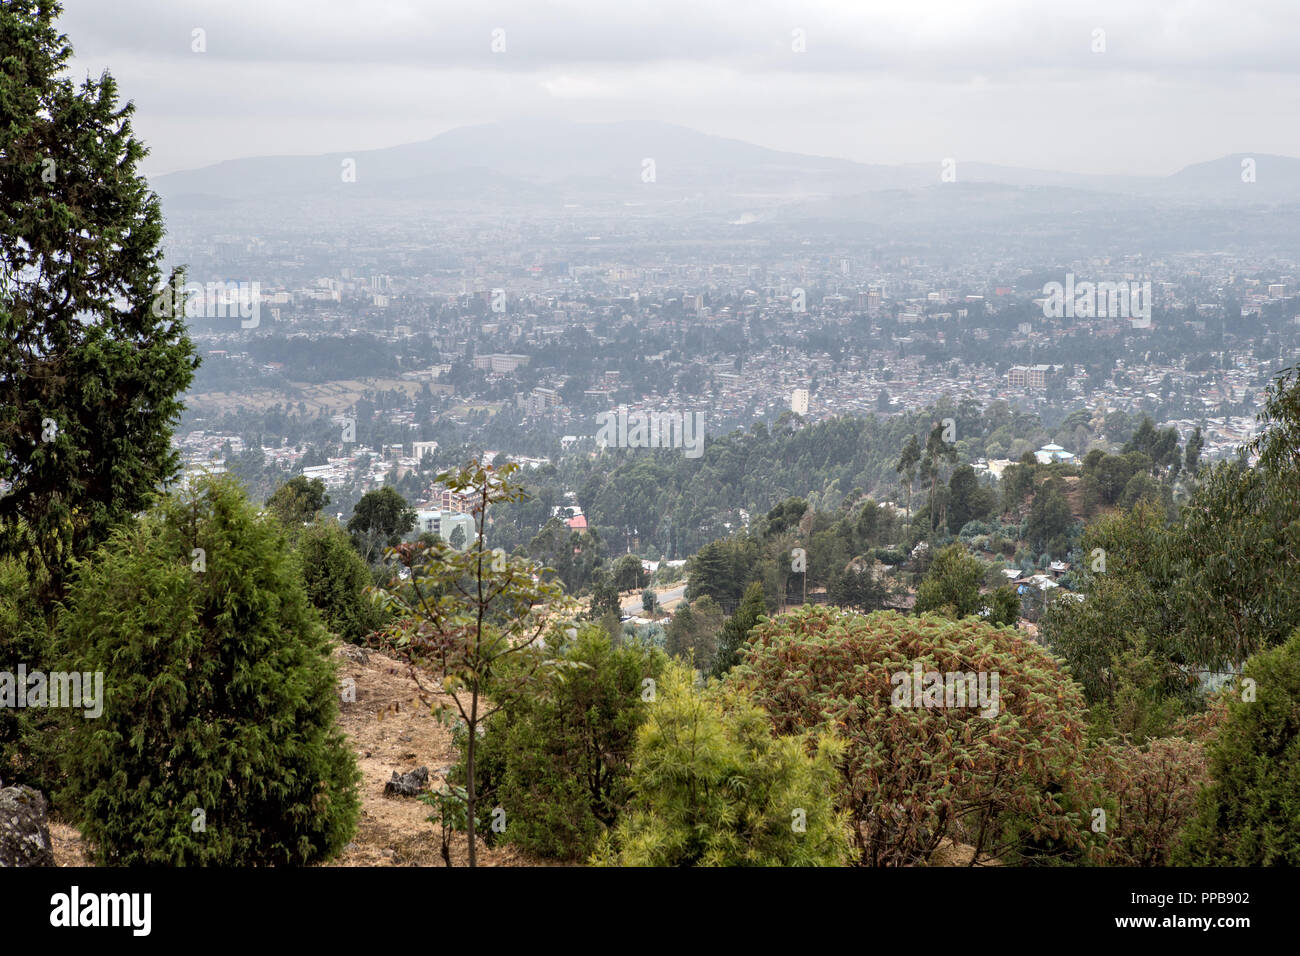 Addis Ababa from Mount Entoto, Ethiopia Stock Photo